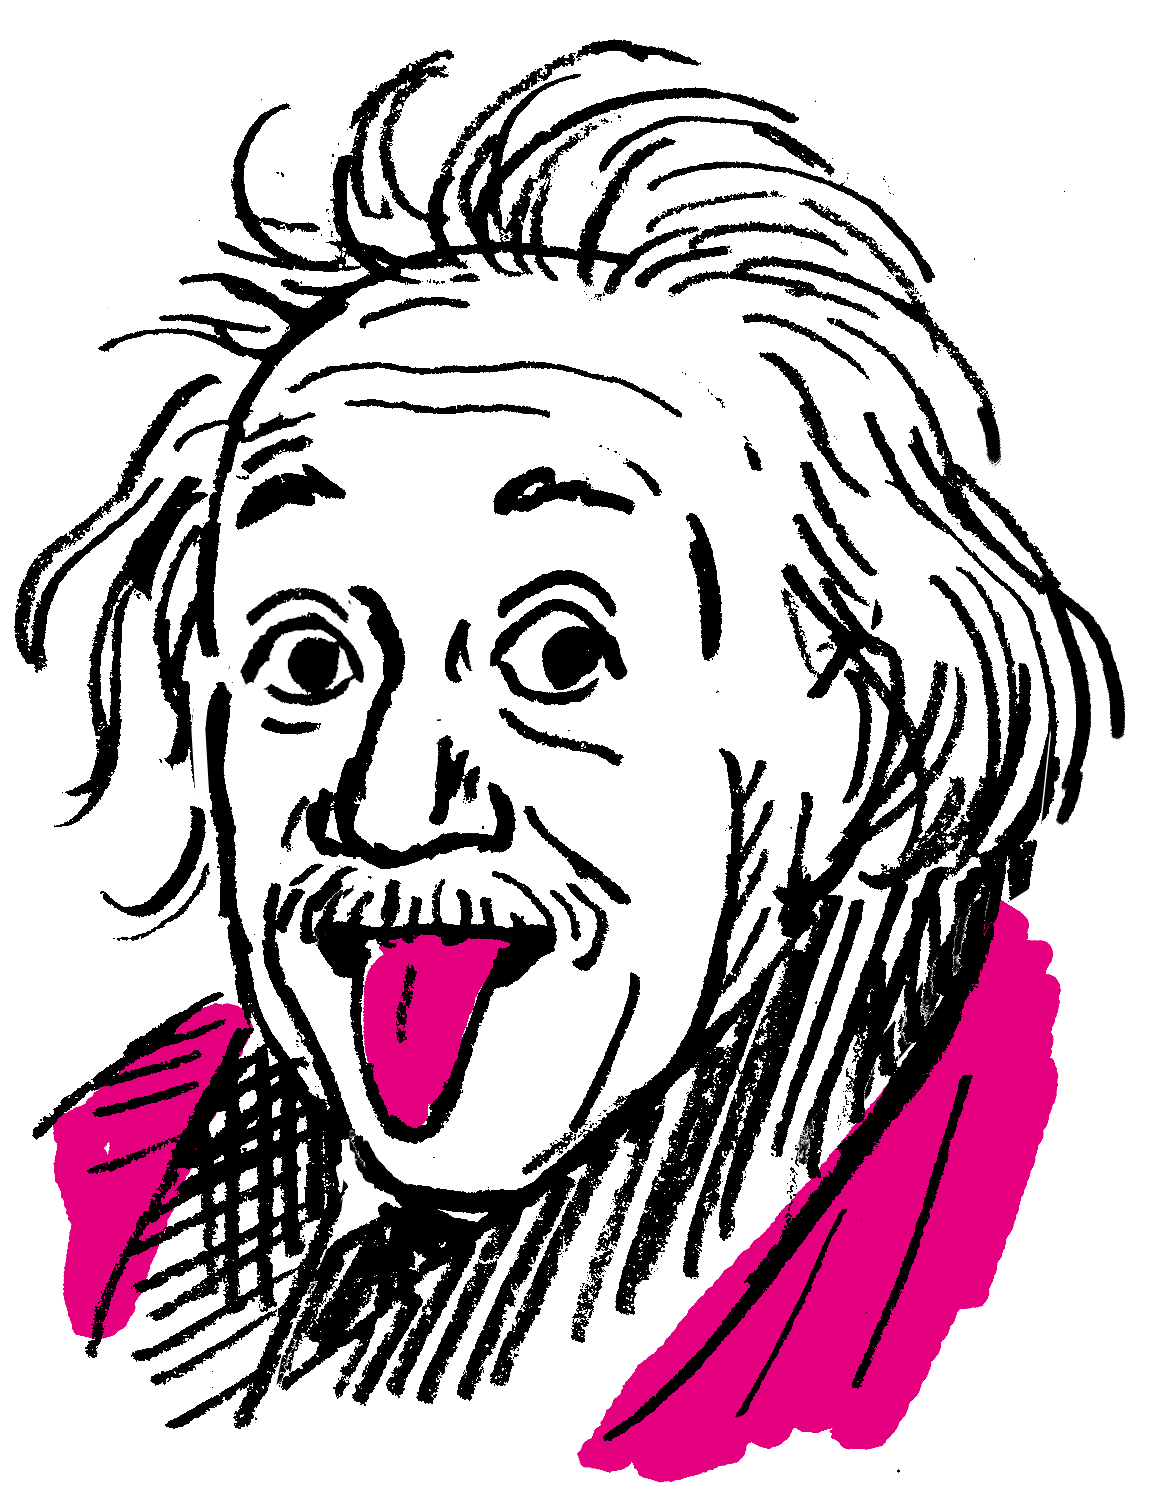 アインシュタインは同級生からバカにされていた 偉人 だっていろいろあった 読めば勇気がわいてくる 新しい心の教科書 ダ ヴィンチニュース